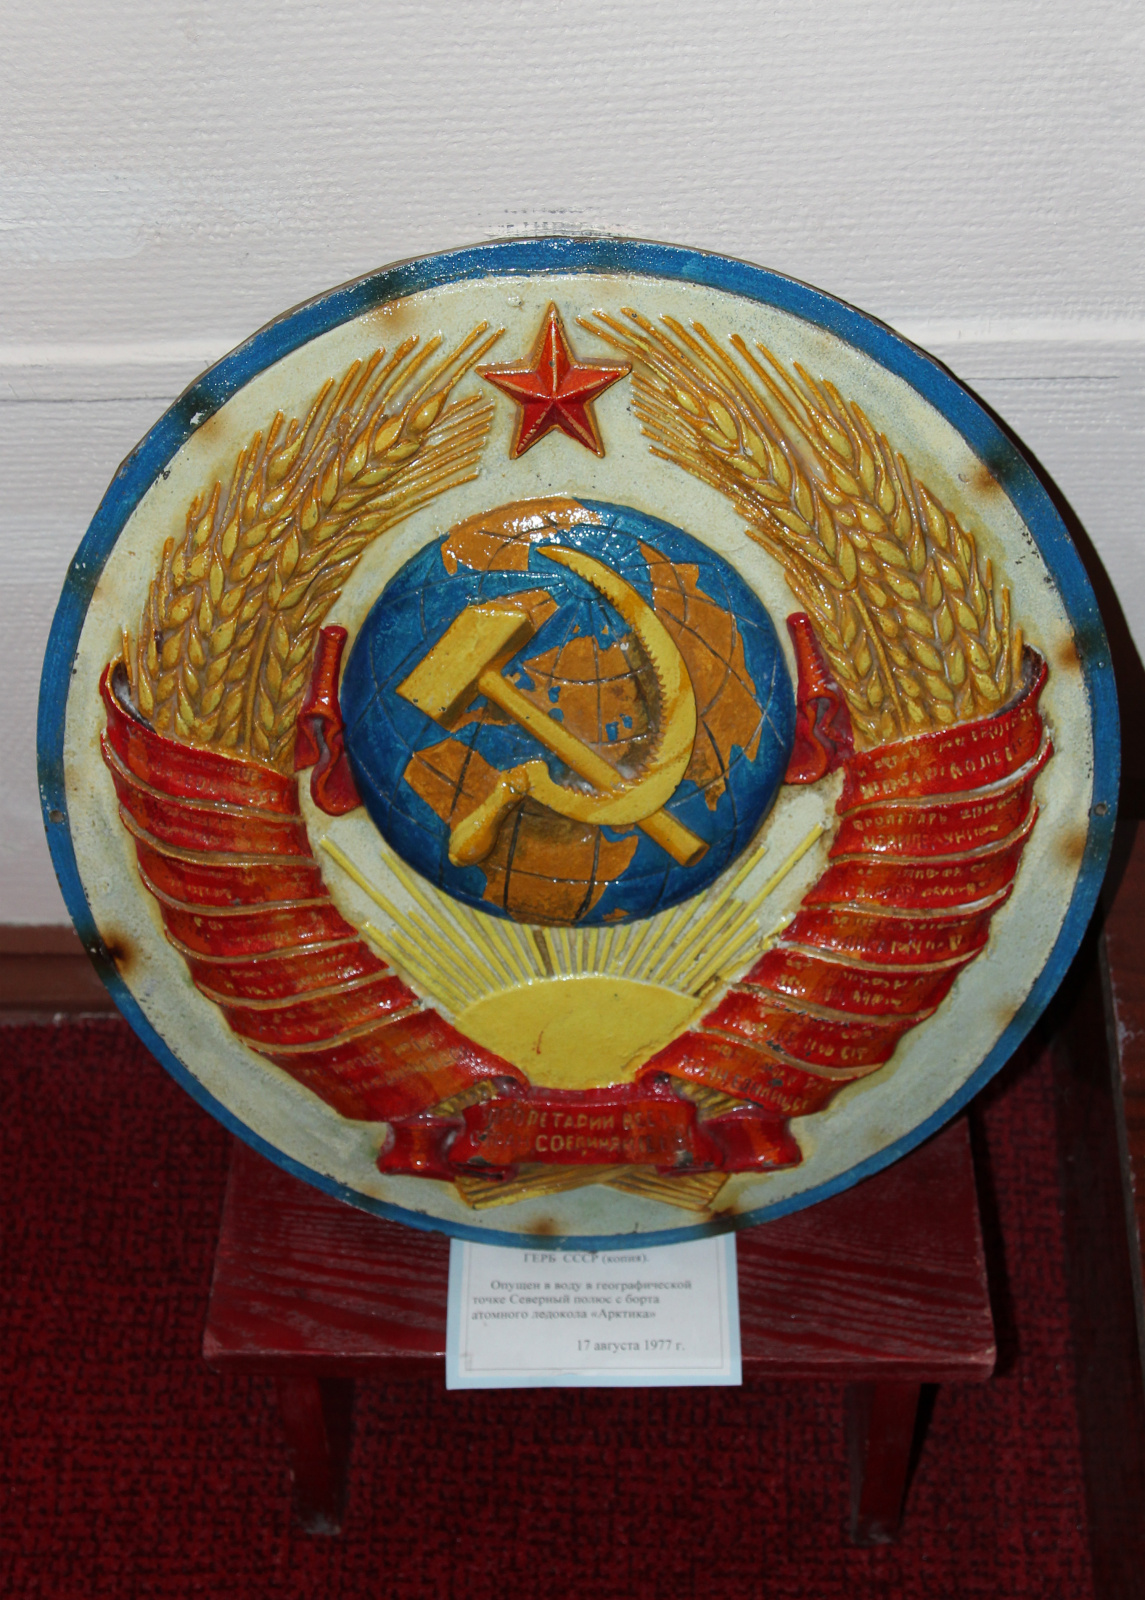 Копия герба СССР, оставленного 